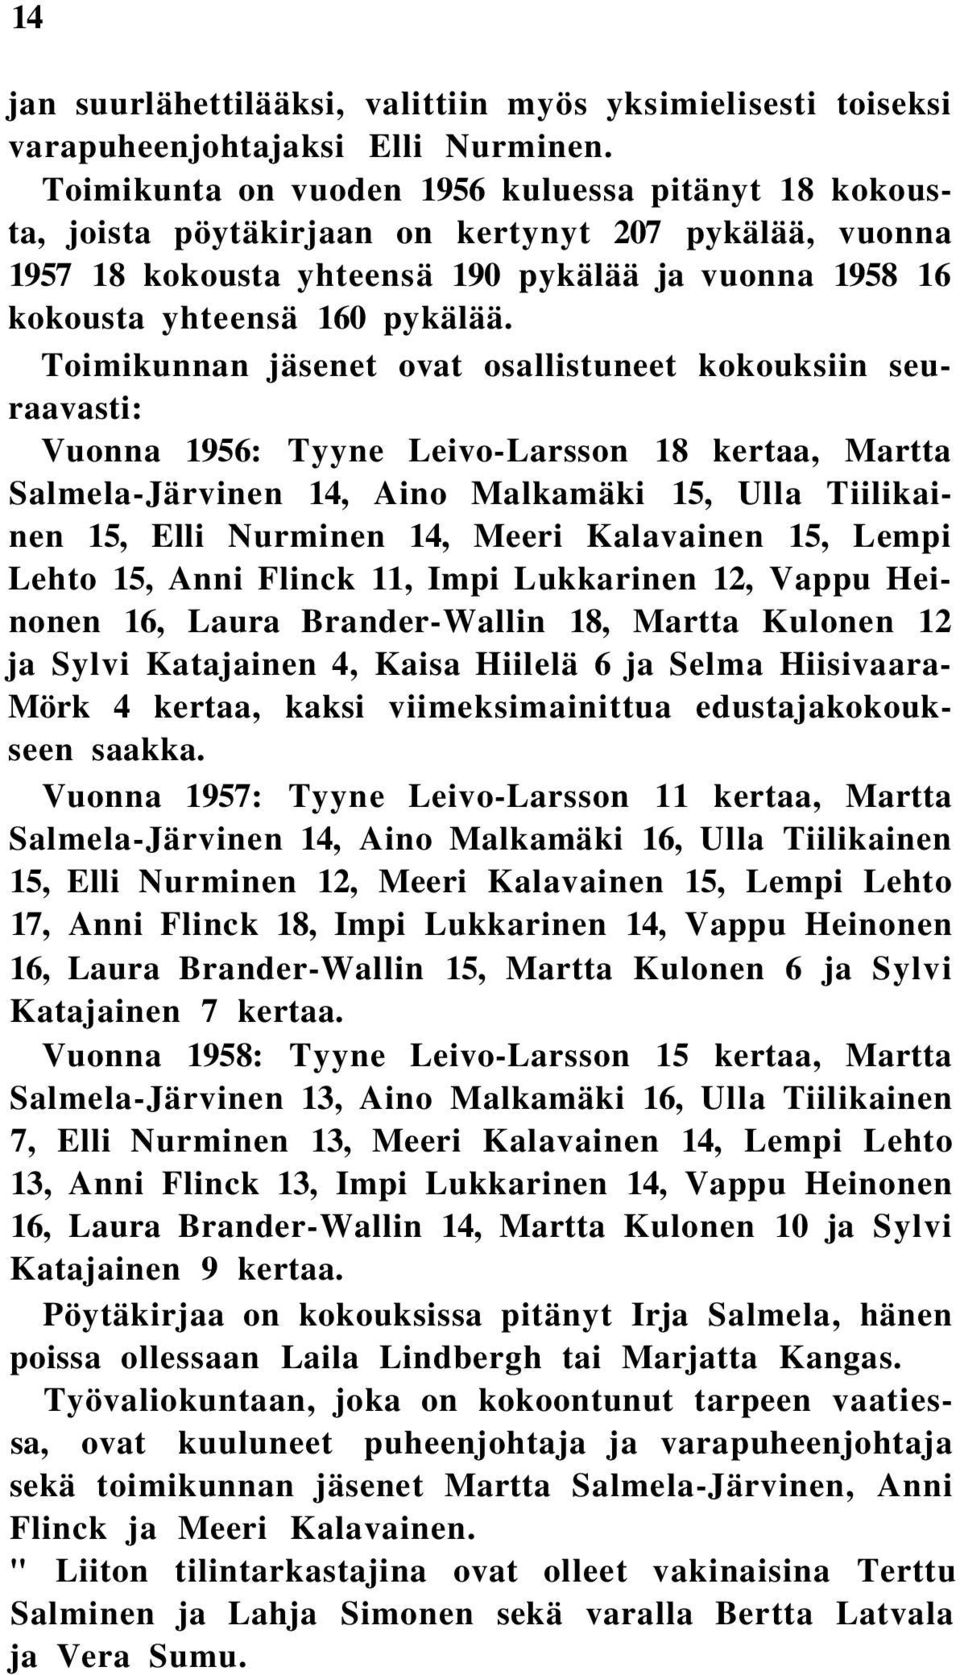 Toimikunnan jäsenet ovat osallistuneet kokouksiin seuraavasti: Vuonna 1956: Tyyne Leivo-Larsson 18 kertaa, Martta Salmela-Järvinen 14, Aino Malkamäki 15, Ulla Tiilikainen 15, Elli Nurminen 14, Meeri